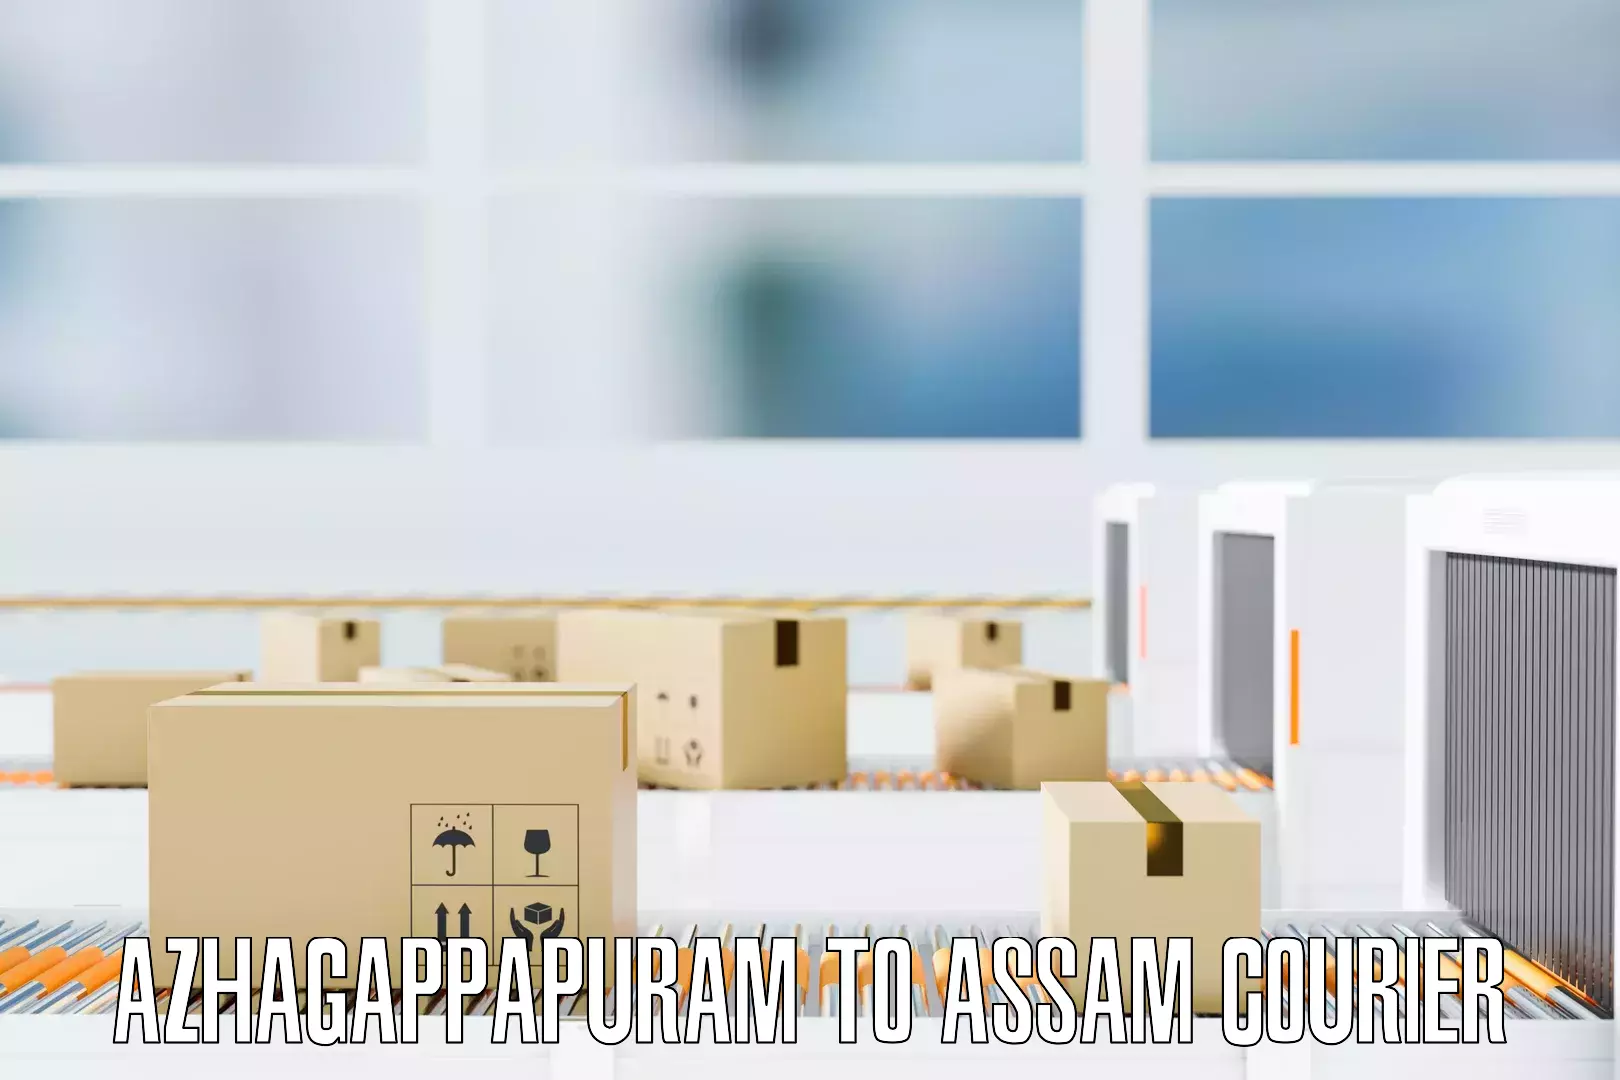 Nationwide furniture transport Azhagappapuram to Narayanpur Lakhimpur